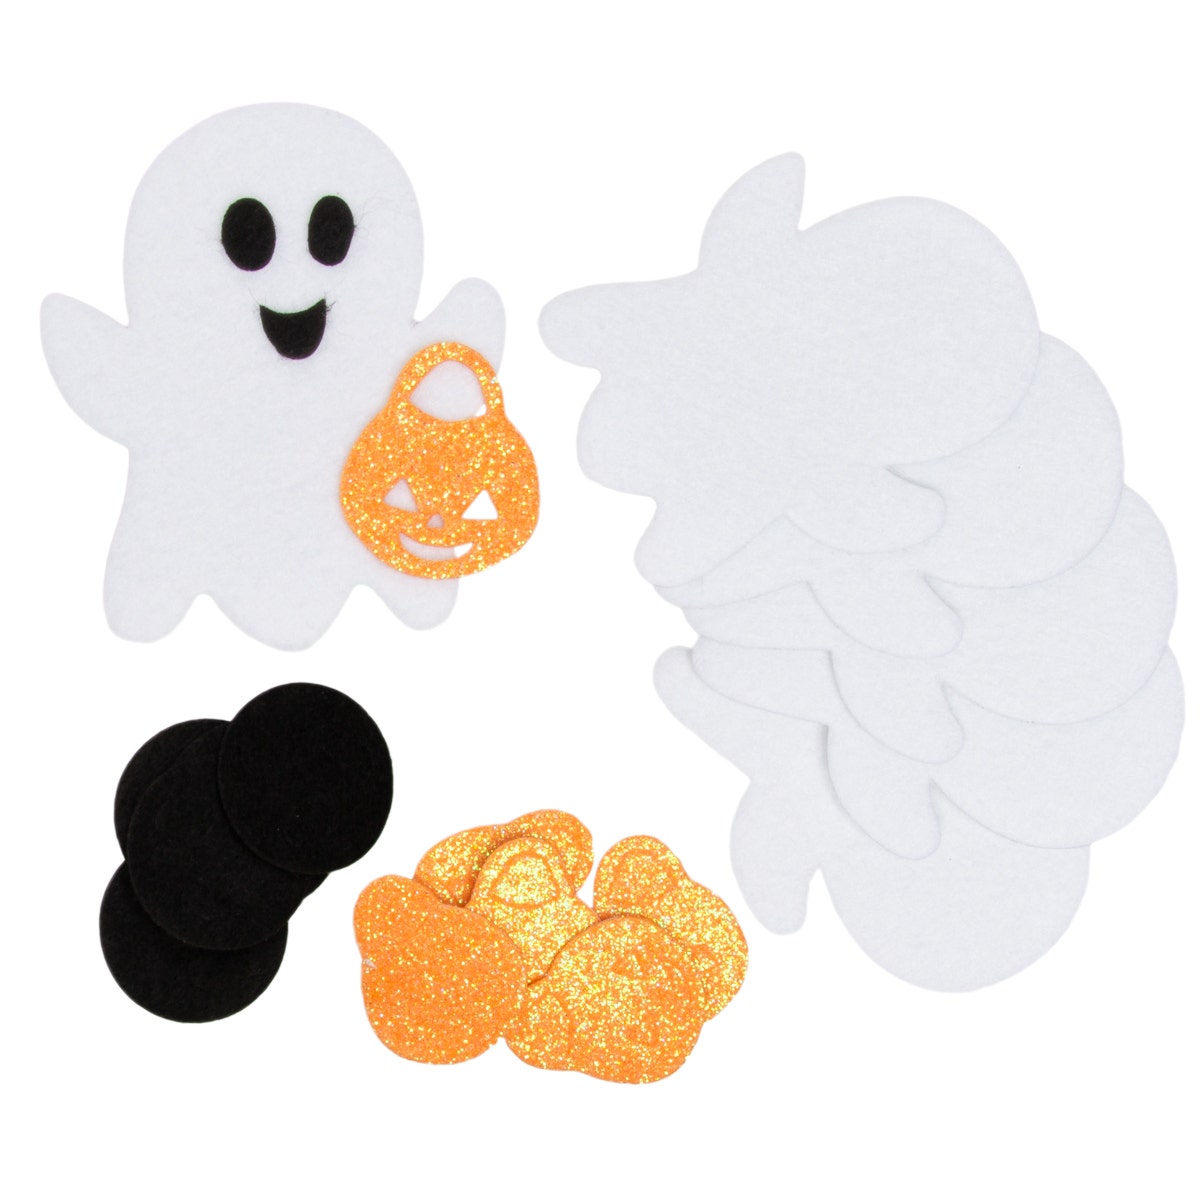 Spooky Fun: Glitter Halloween Foam Stickers for Kids Crafts